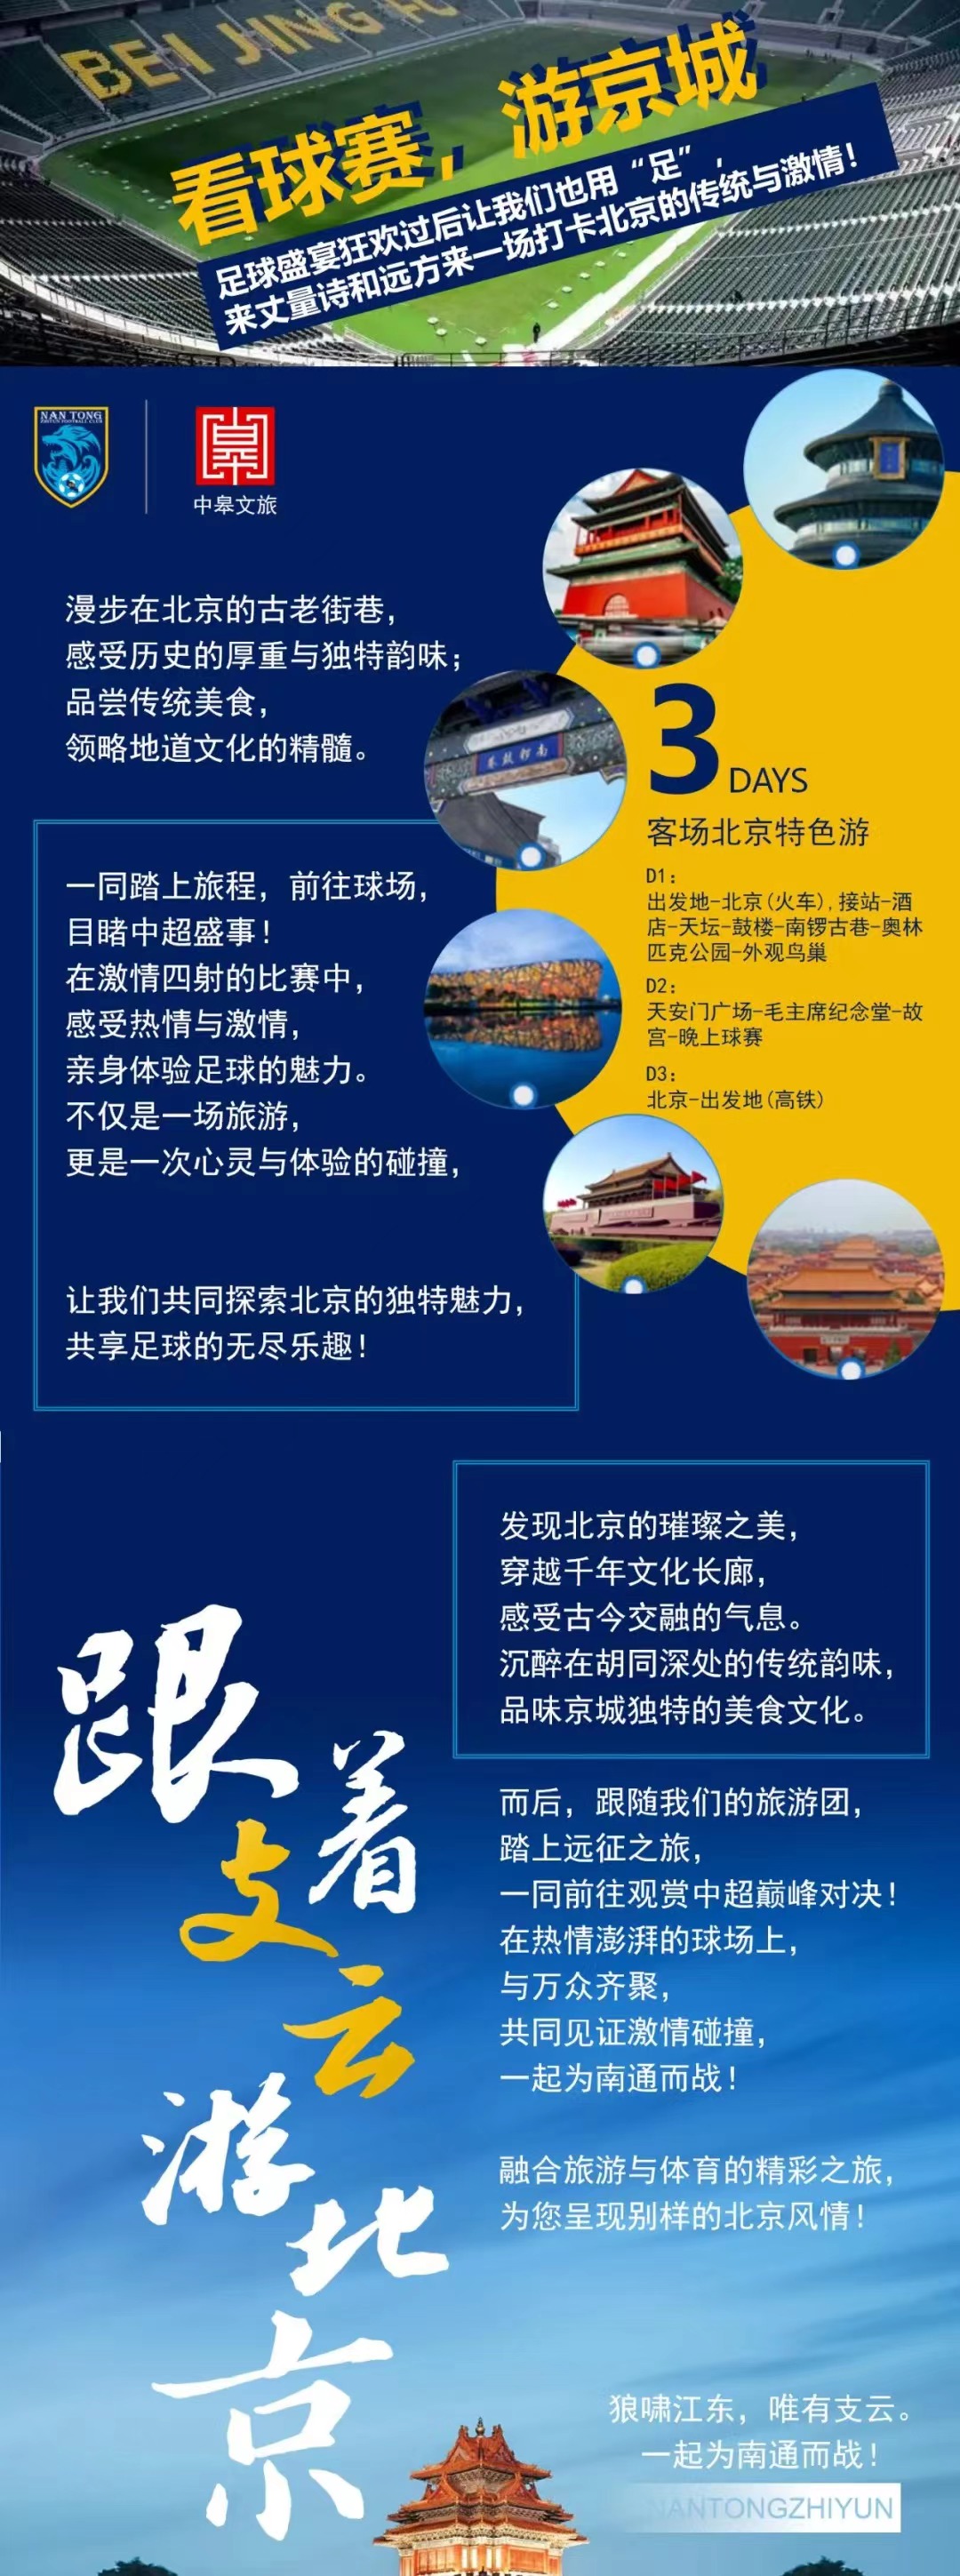 看球旅游两不误👍南通队推出客场北京3日游:费用2580元或2800元